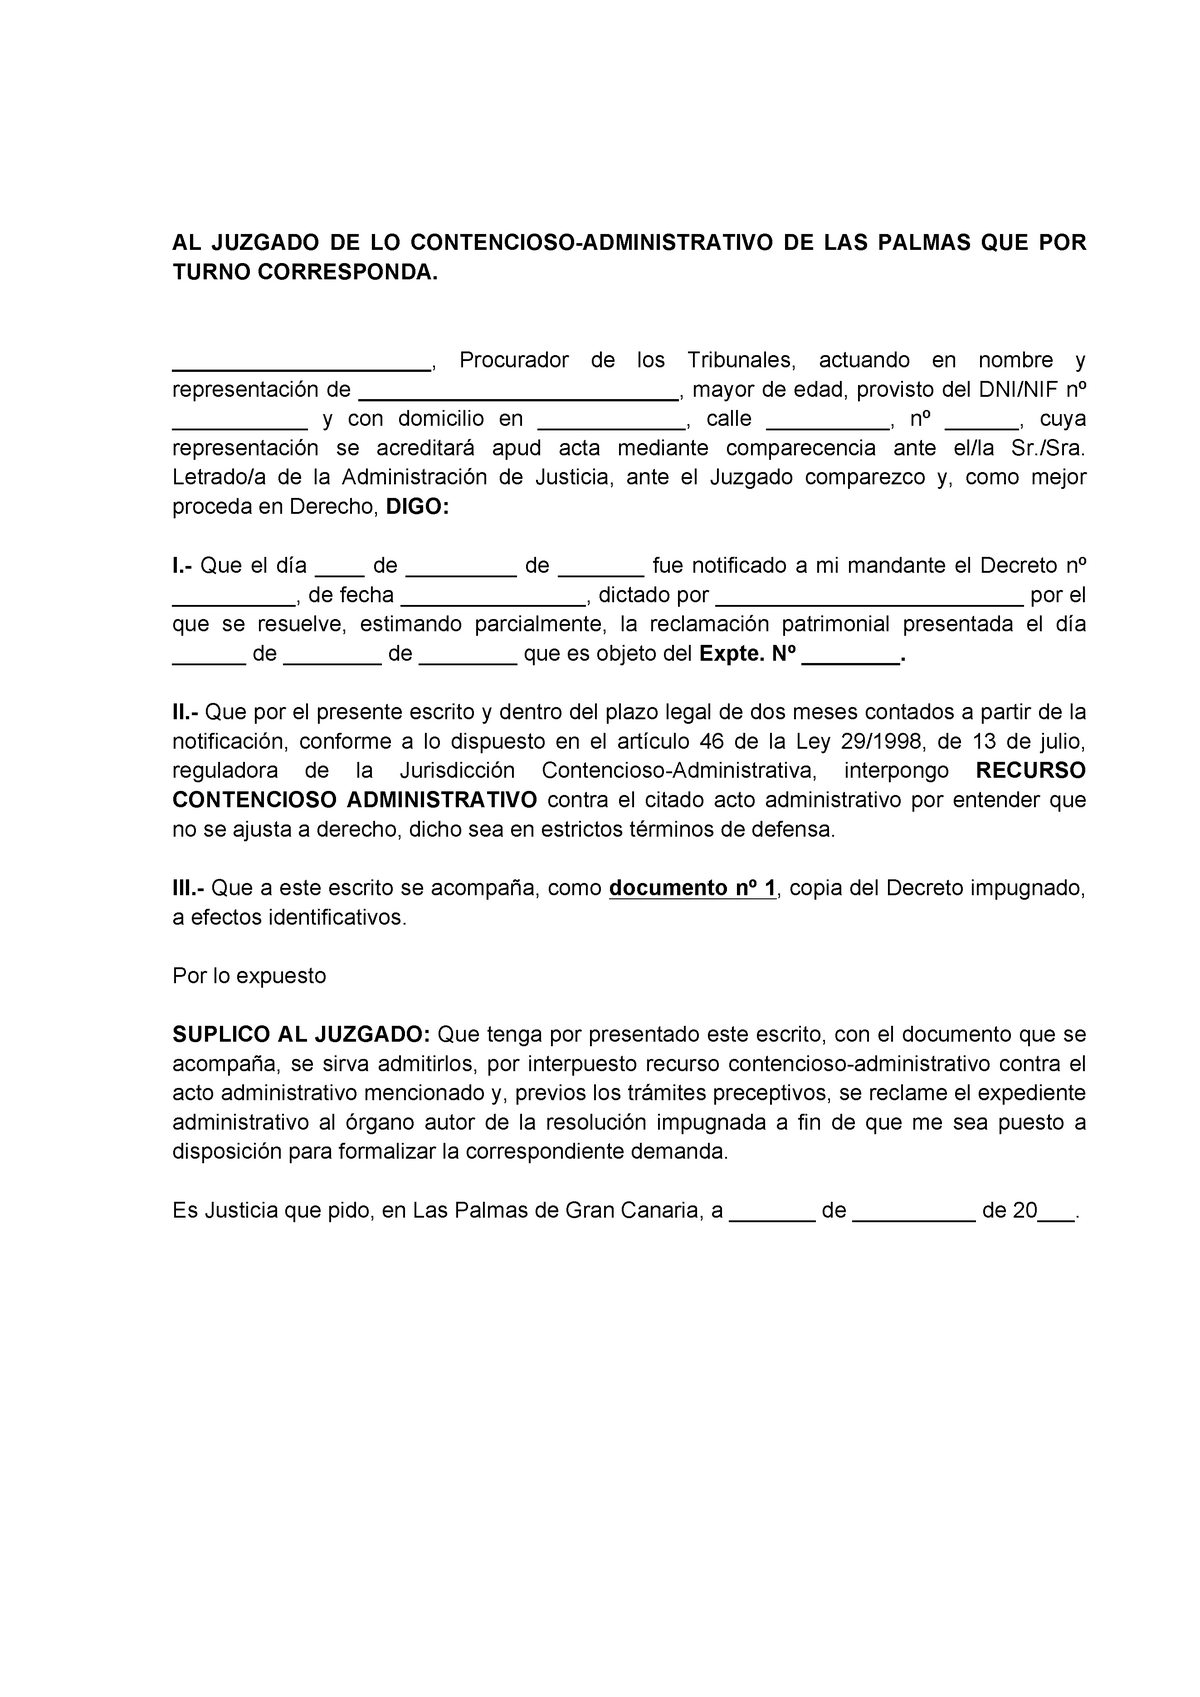 Escrito de interposición recurso contencioso-administrativo - AL JUZGADO DE  LO - Studocu